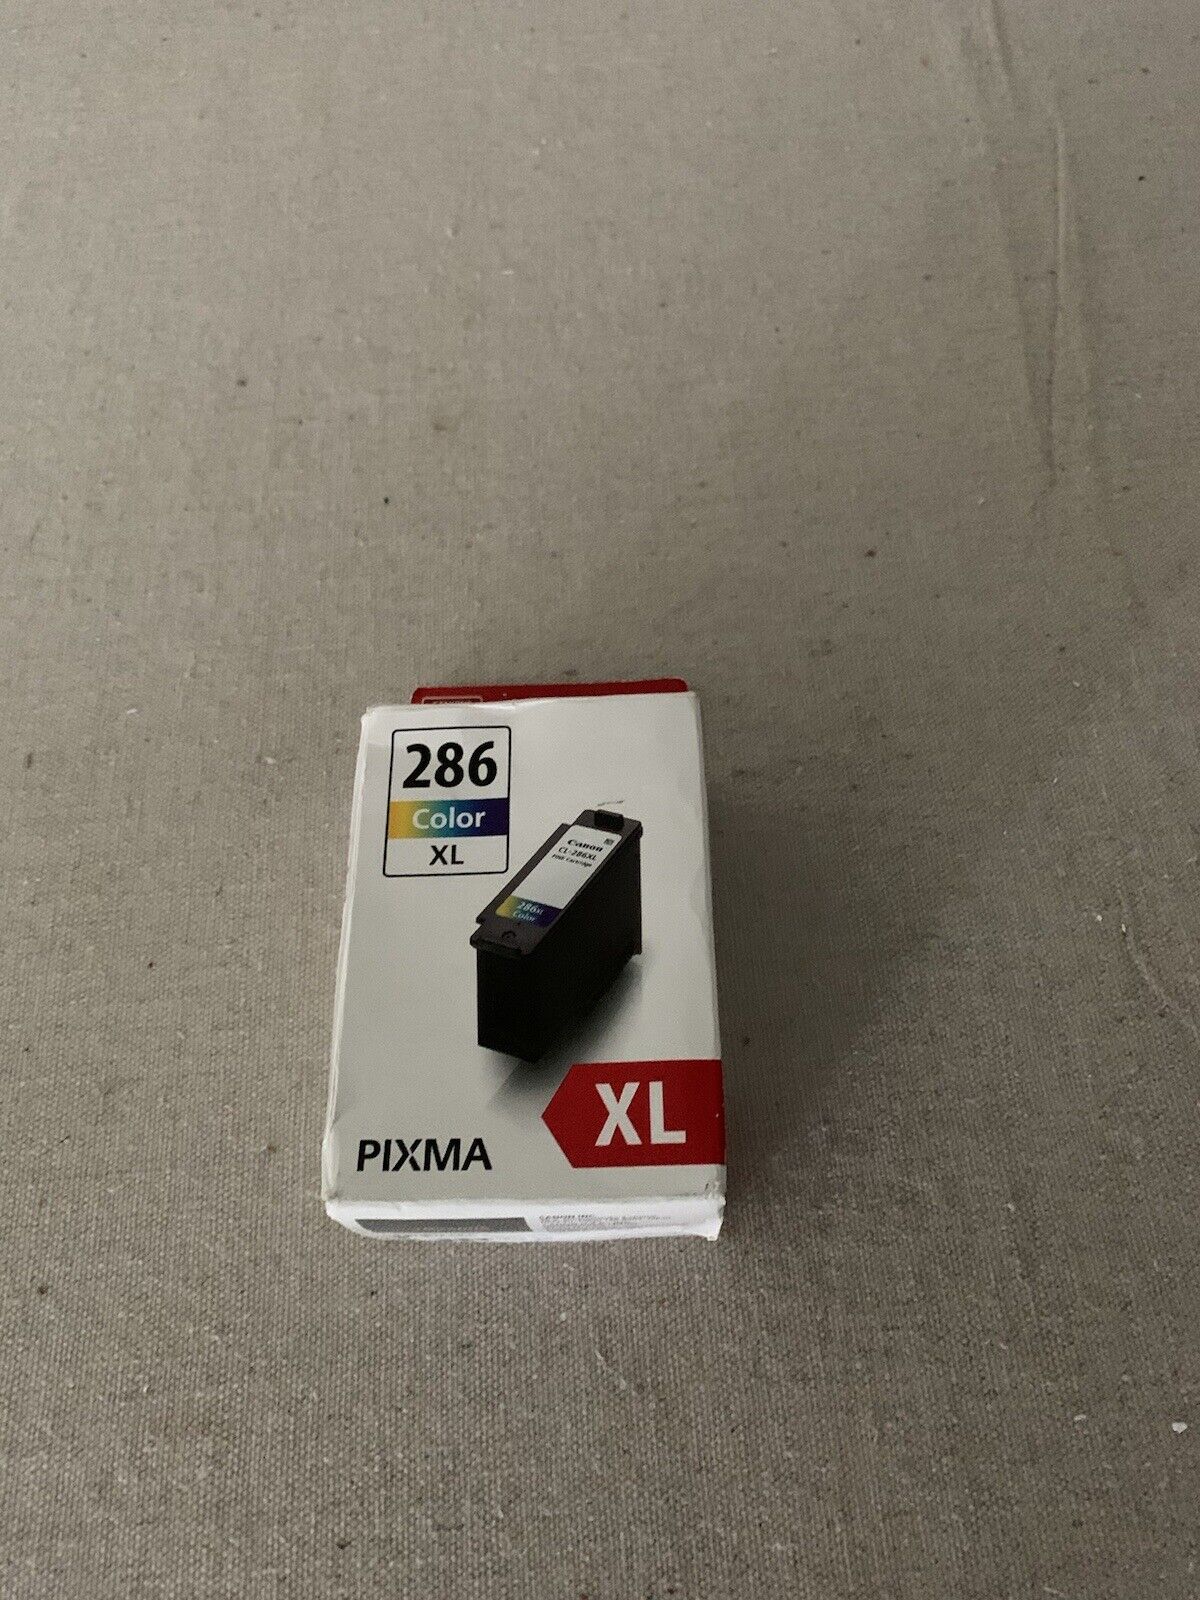 CANON 286 Color XL Fine PIXMA XL CL-286XL-3 Colors